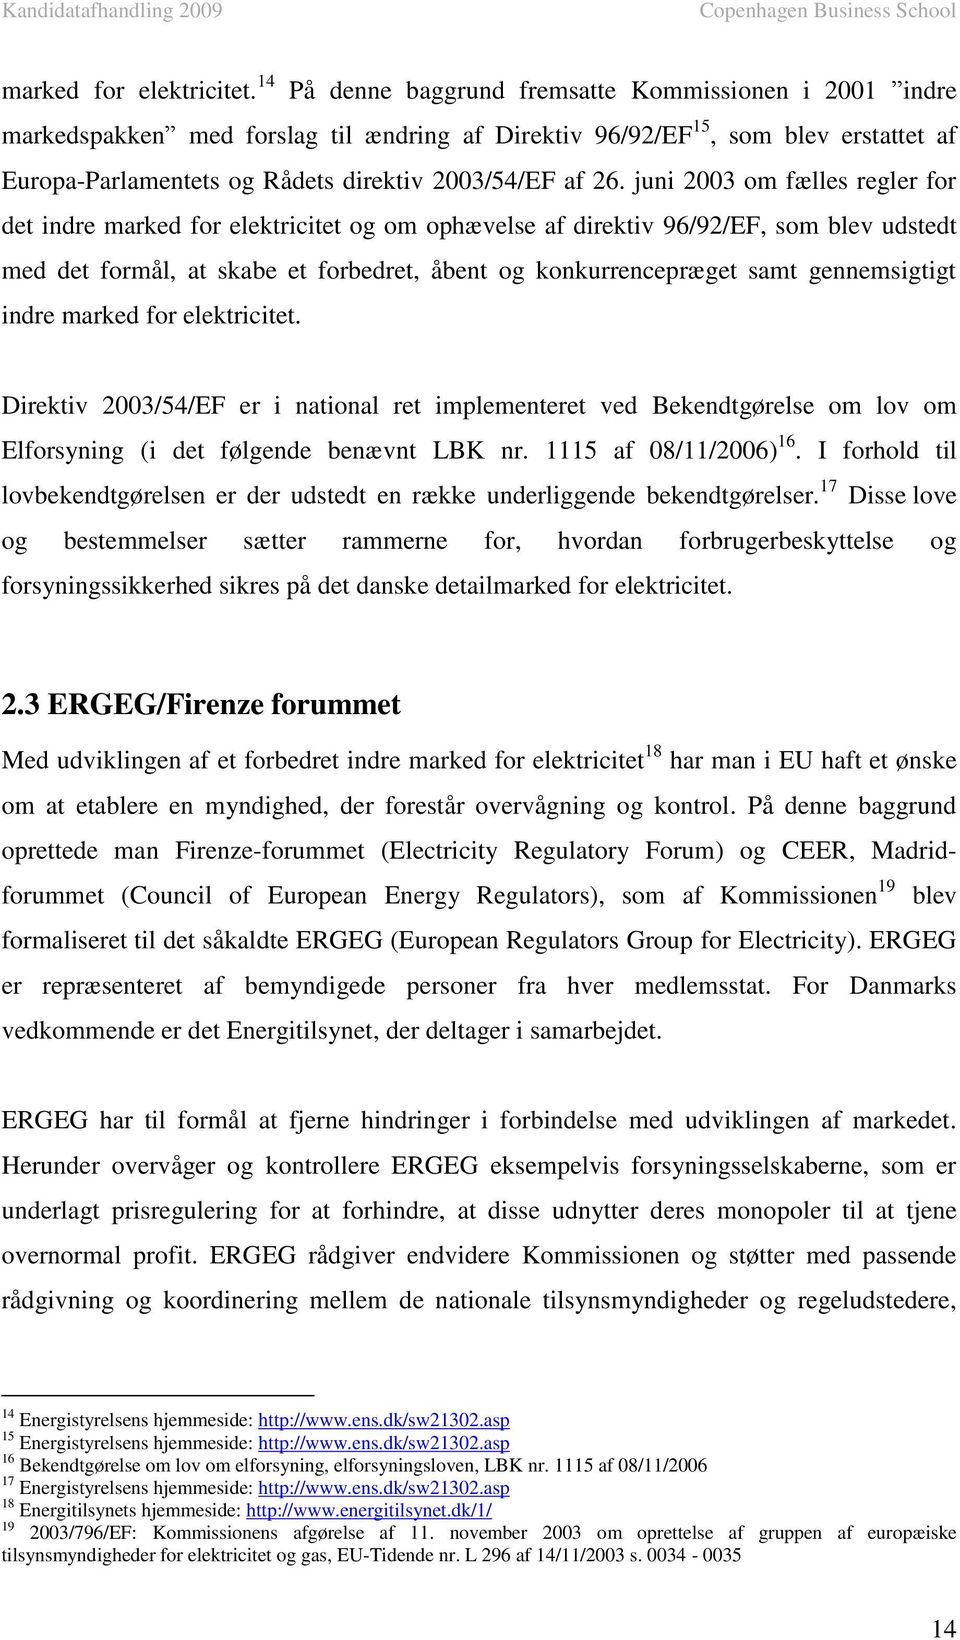 juni 2003 om fælles regler for det indre marked for elektricitet og om ophævelse af direktiv 96/92/EF, som blev udstedt med det formål, at skabe et forbedret, åbent og konkurrencepræget samt